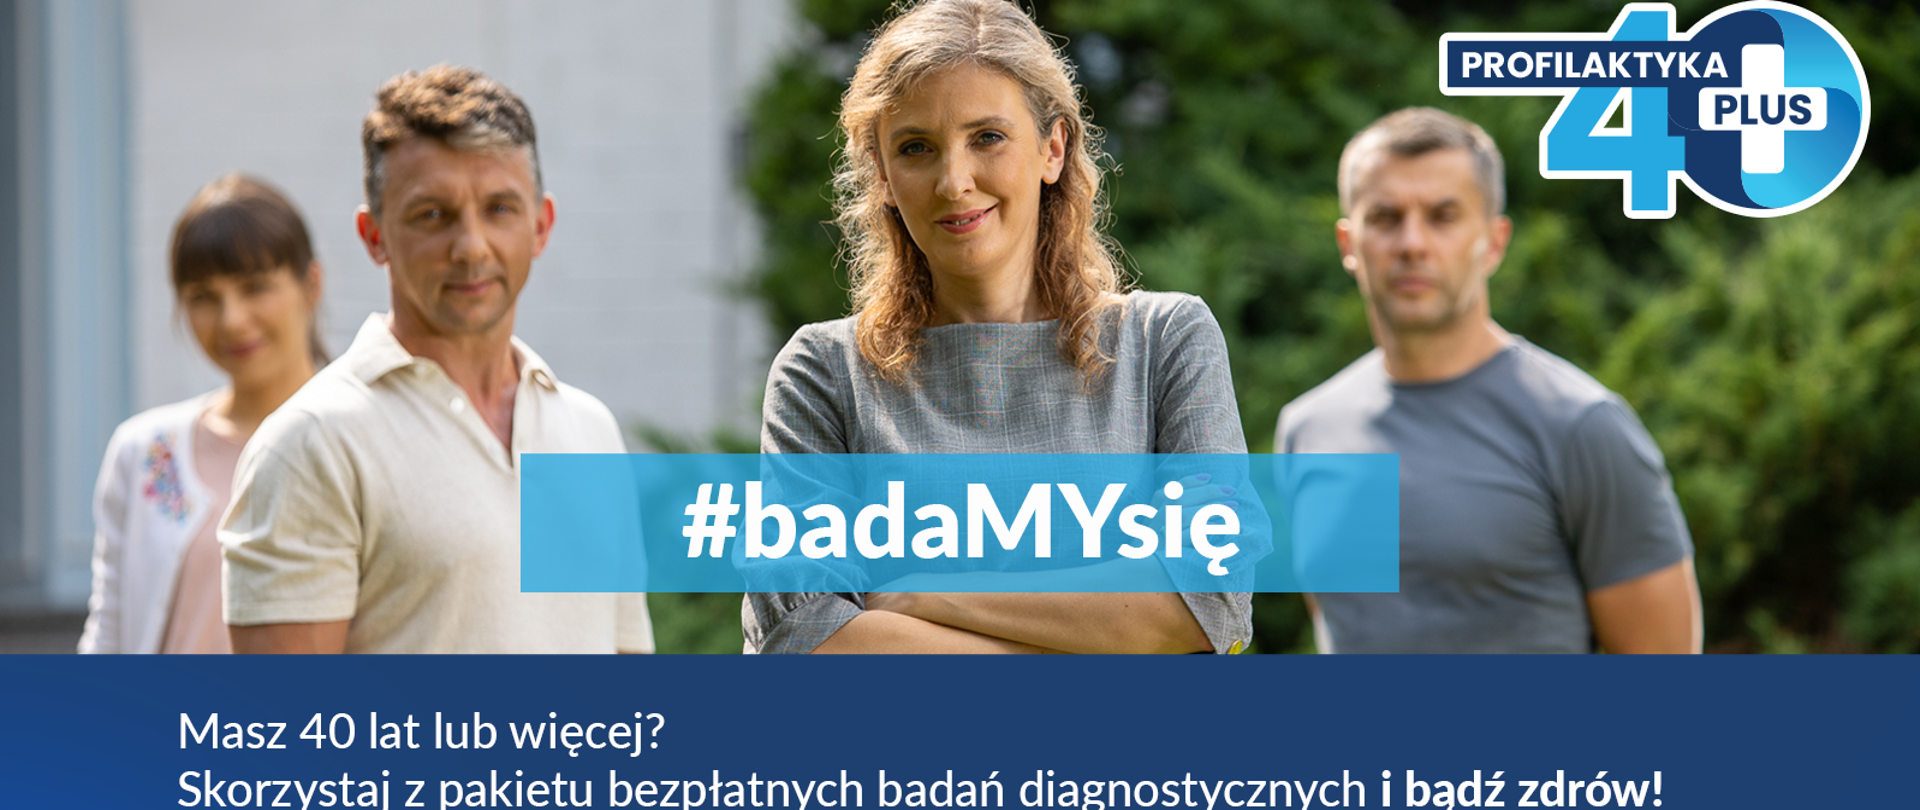 Cztery osoby w średnim wieku. Grafika opatrzona hasłem #badaMYsię oraz przekierowanie na stronę kampanii www.gov.pl/web/zdrowie/profilaktyka-40-plus